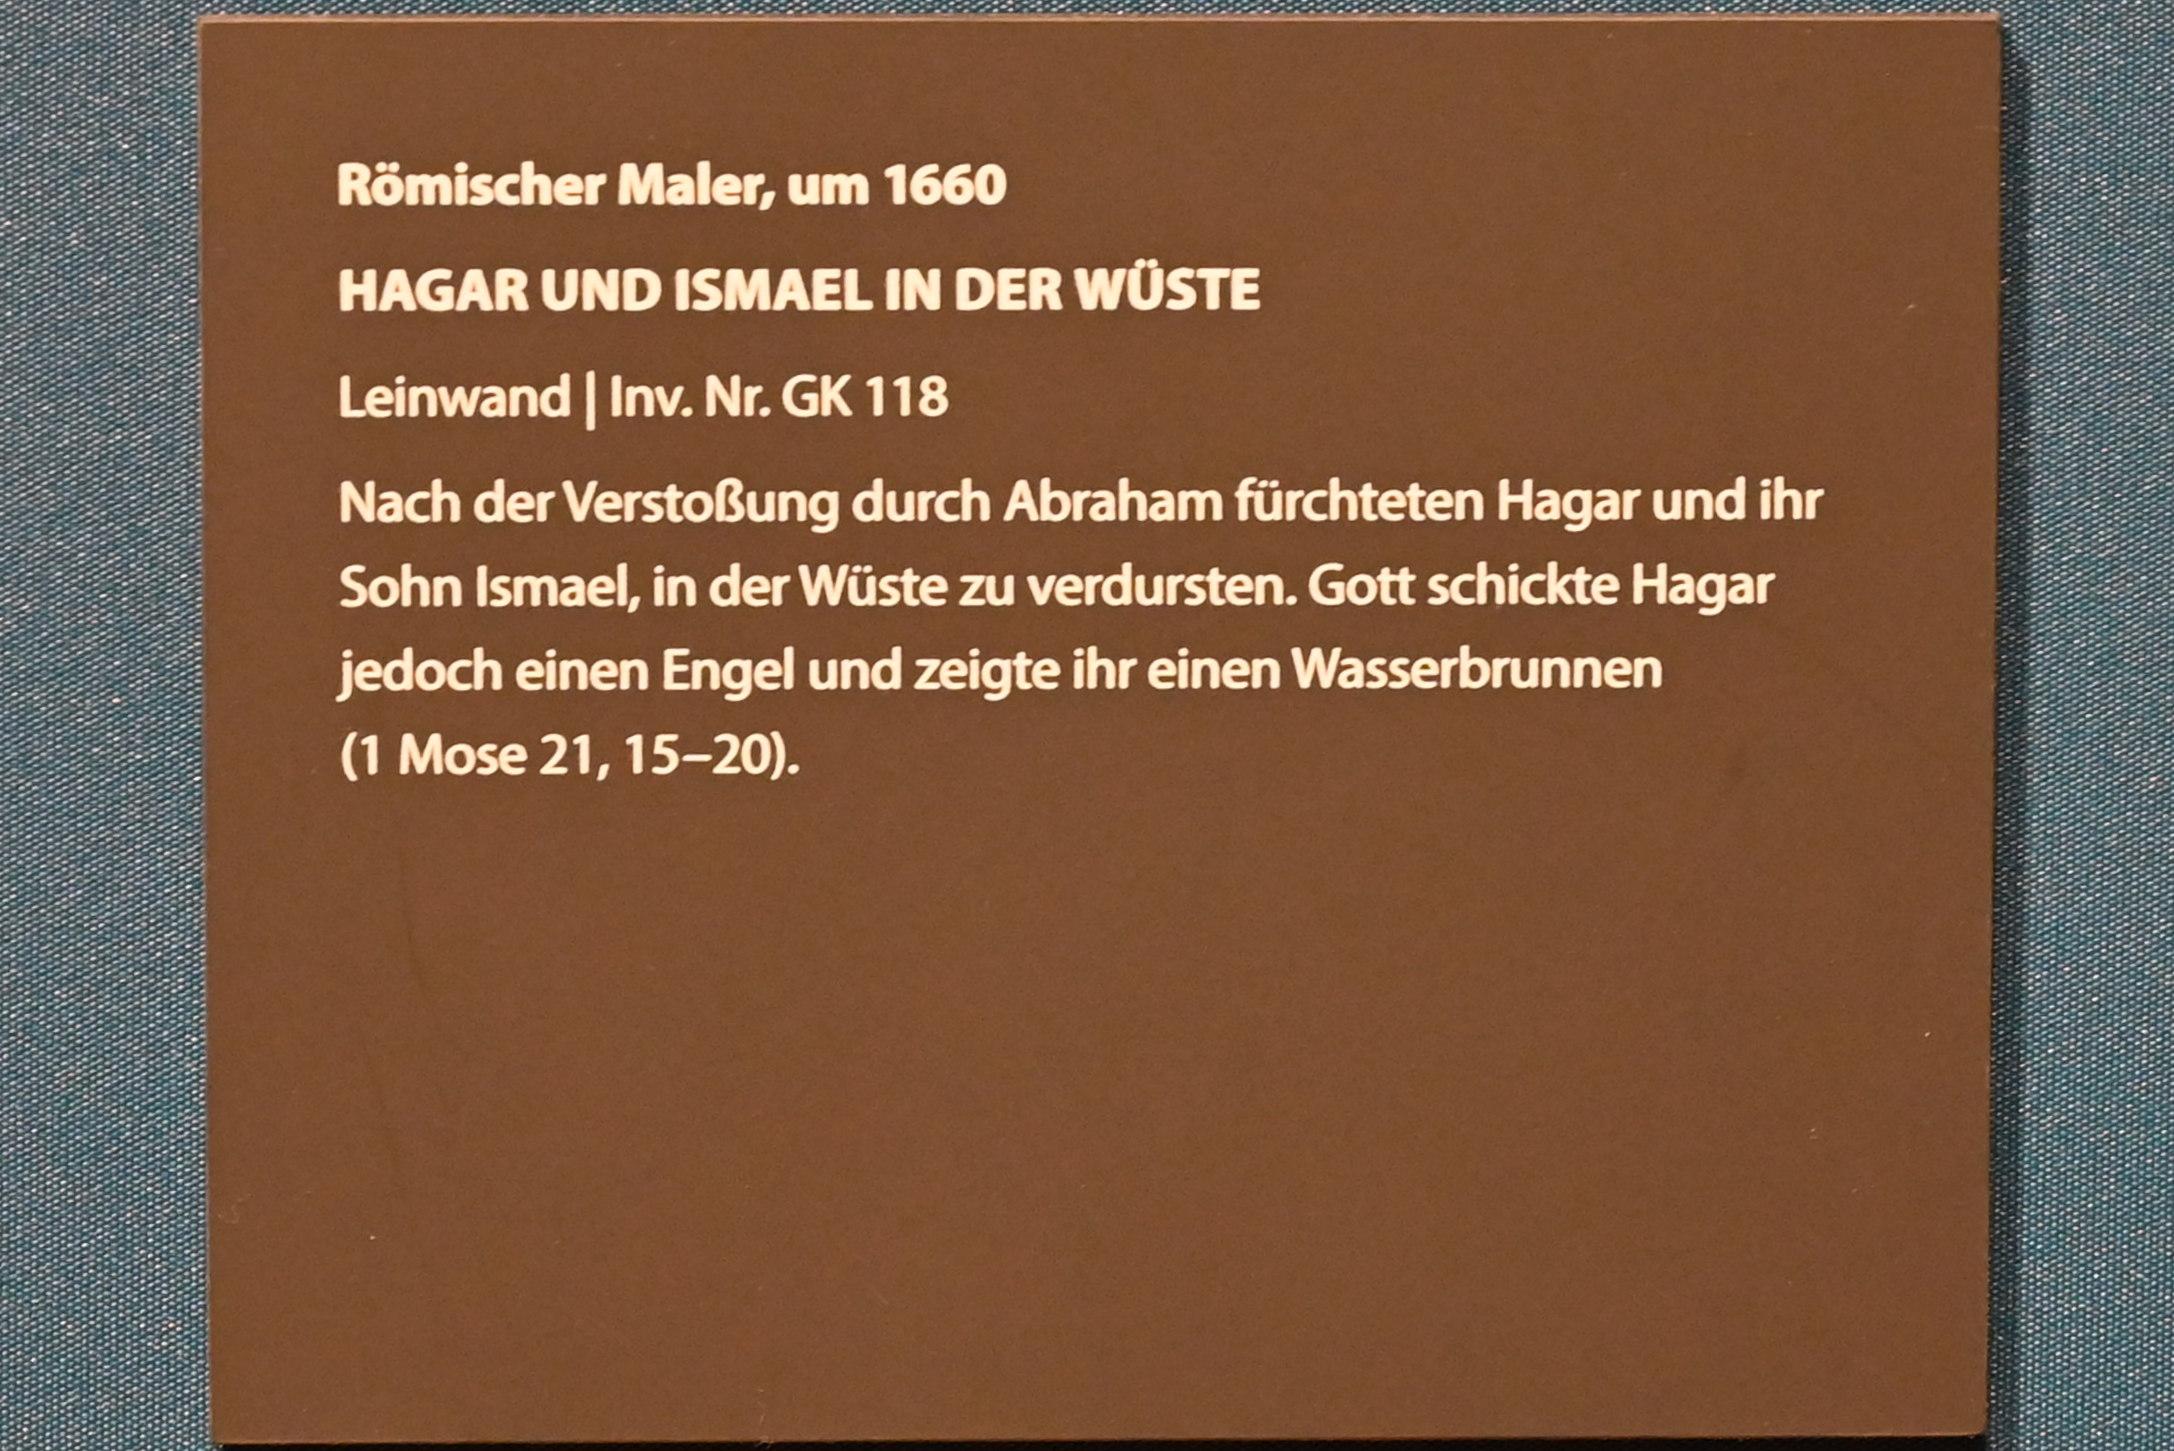 Hagar und Ismael in der Wüste, Darmstadt, Hessisches Landesmuseum, Saal 3, um 1660, Bild 2/2